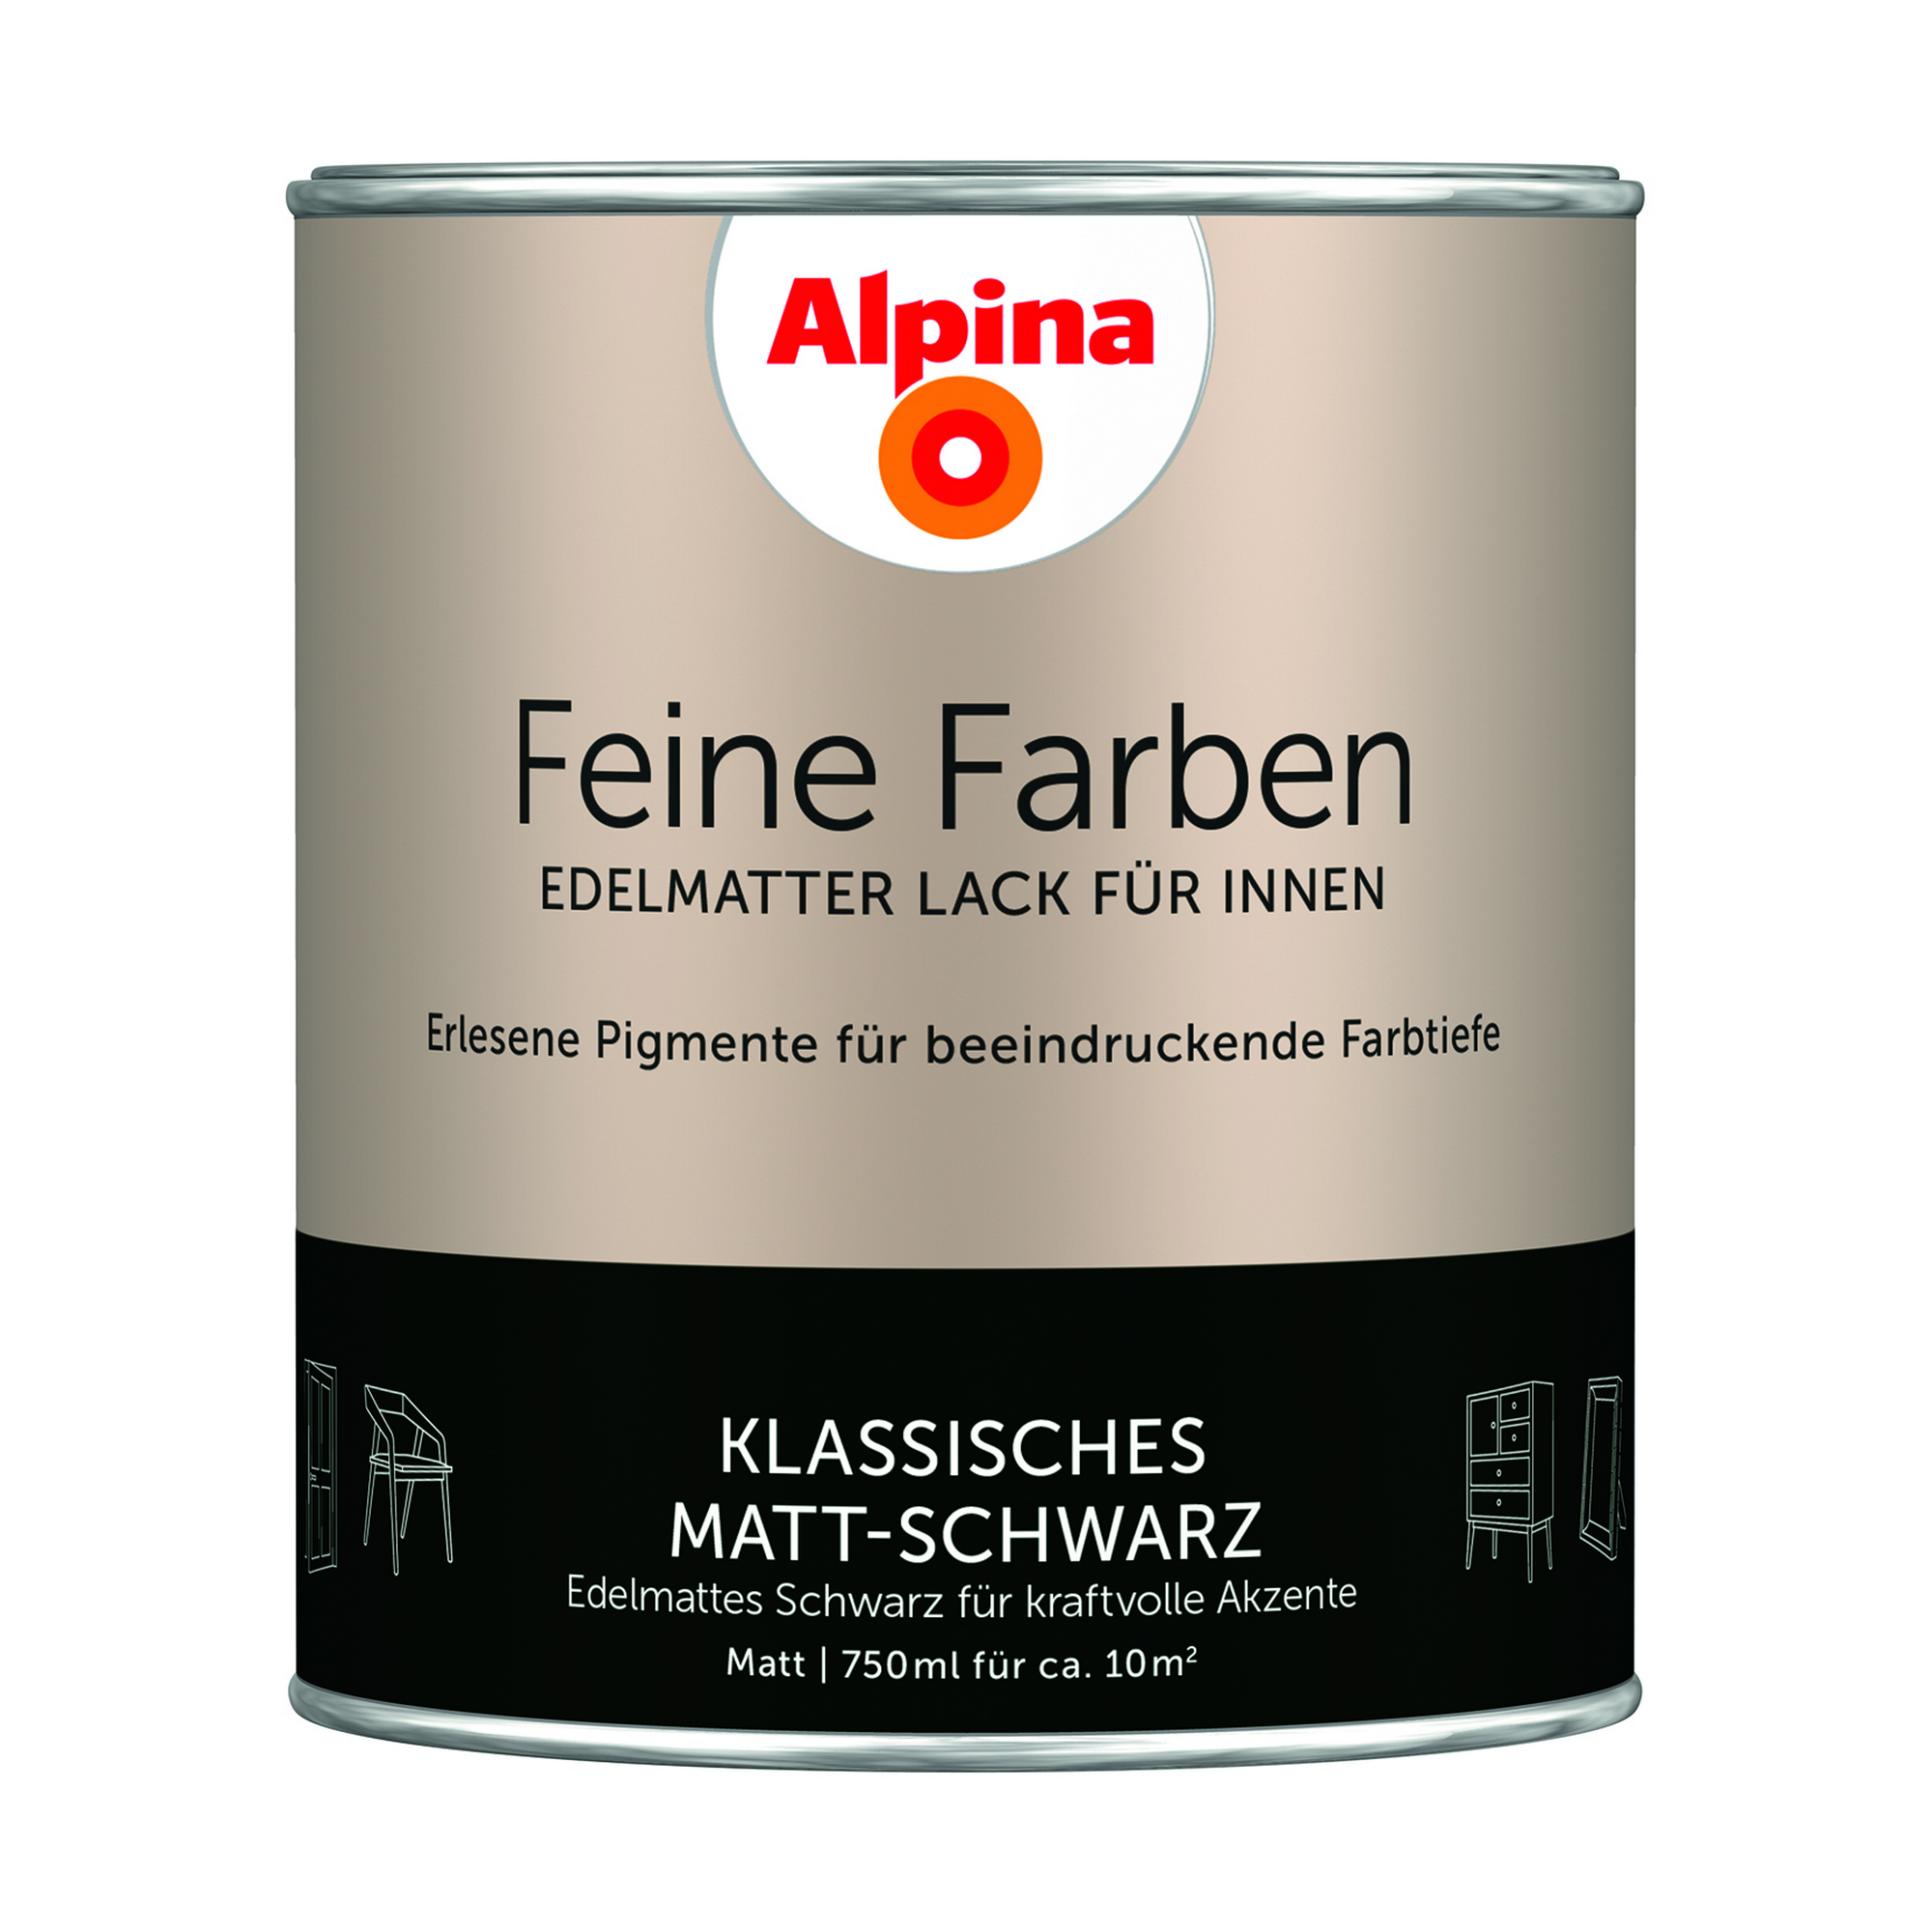 Feine Farben 'Klassisches Matt-Schwarz' schwarz matt 750 ml + product picture